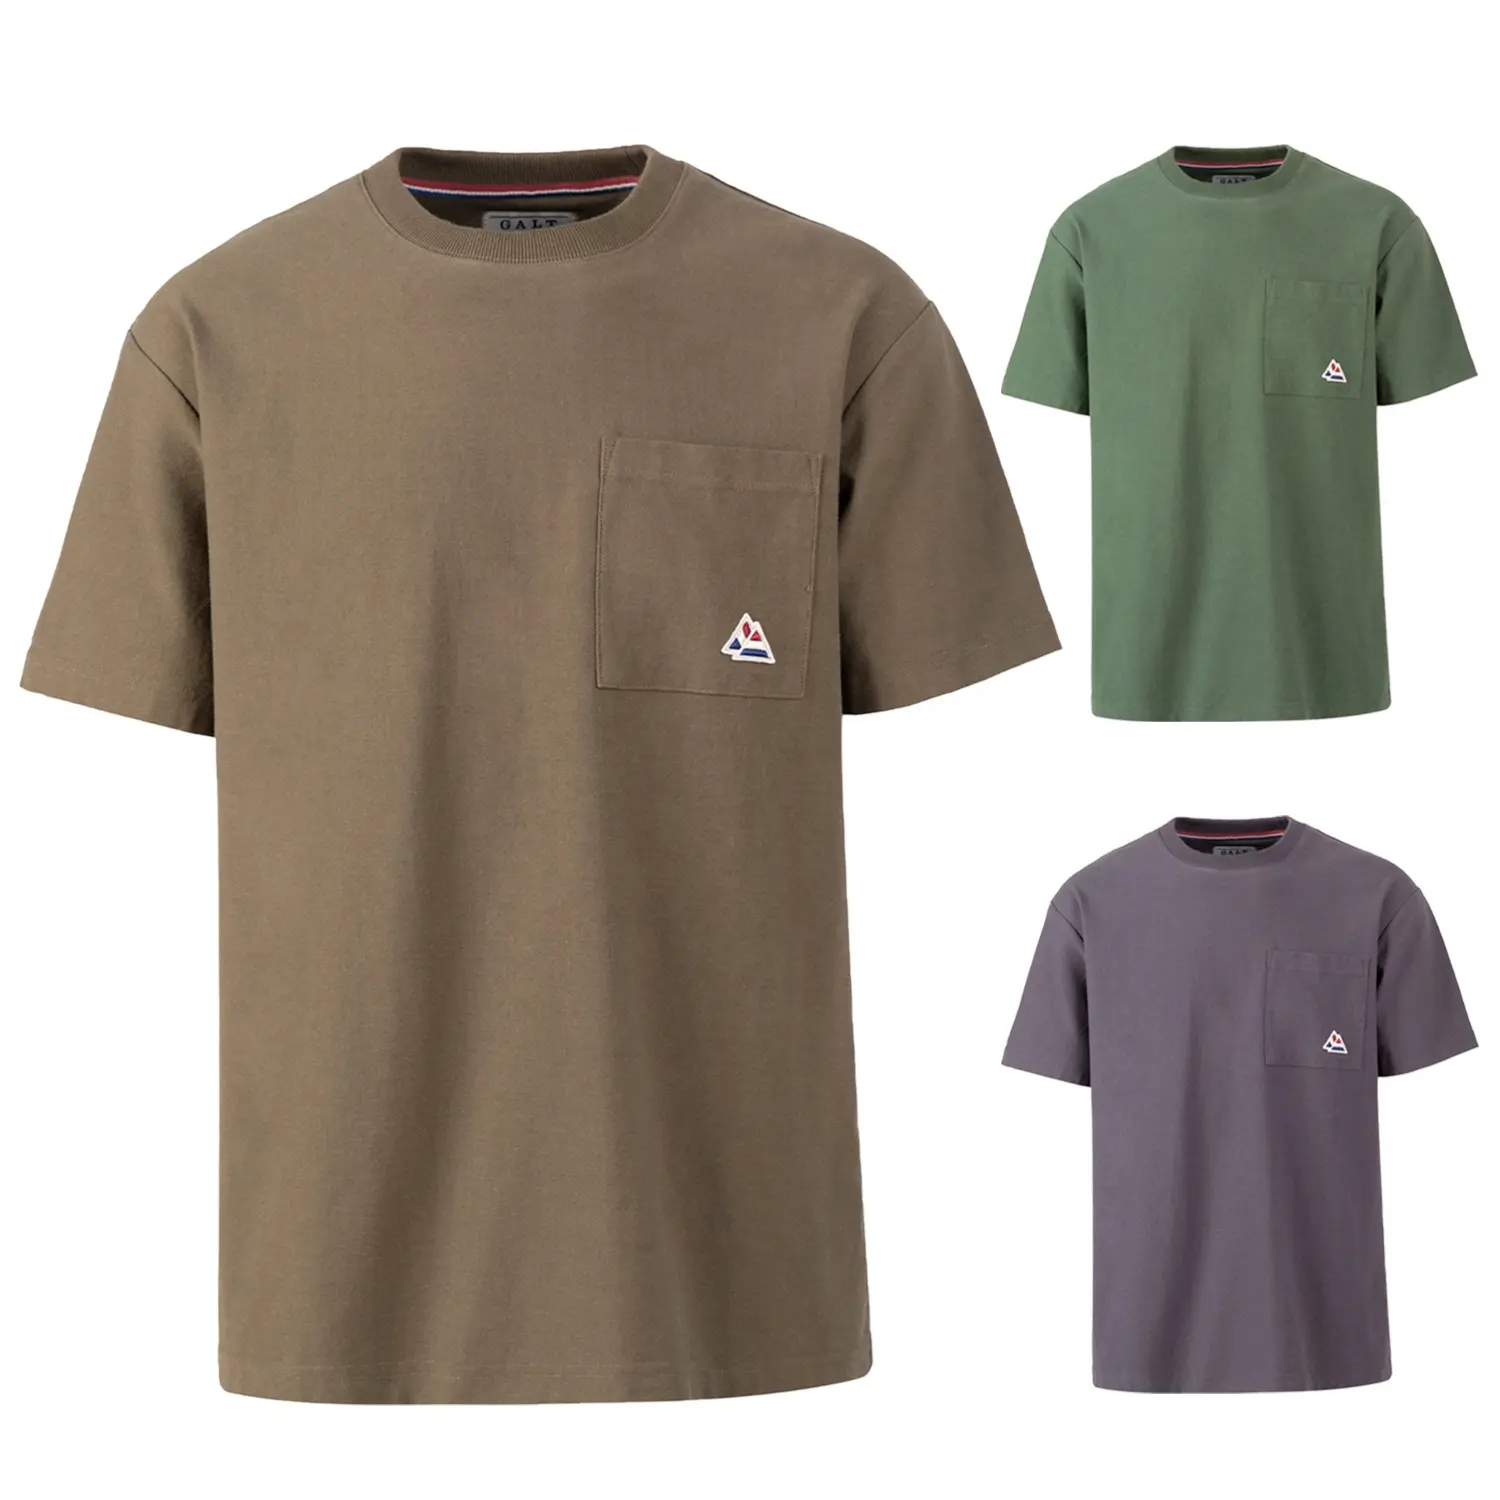 प्रकाश लक्जरी बड़े हैवीवेट टी शर्ट कस्टम 100% कपास पुरुषों Tshirt कारखाना कीमत पर कार्बनिक कपास टीशर्ट